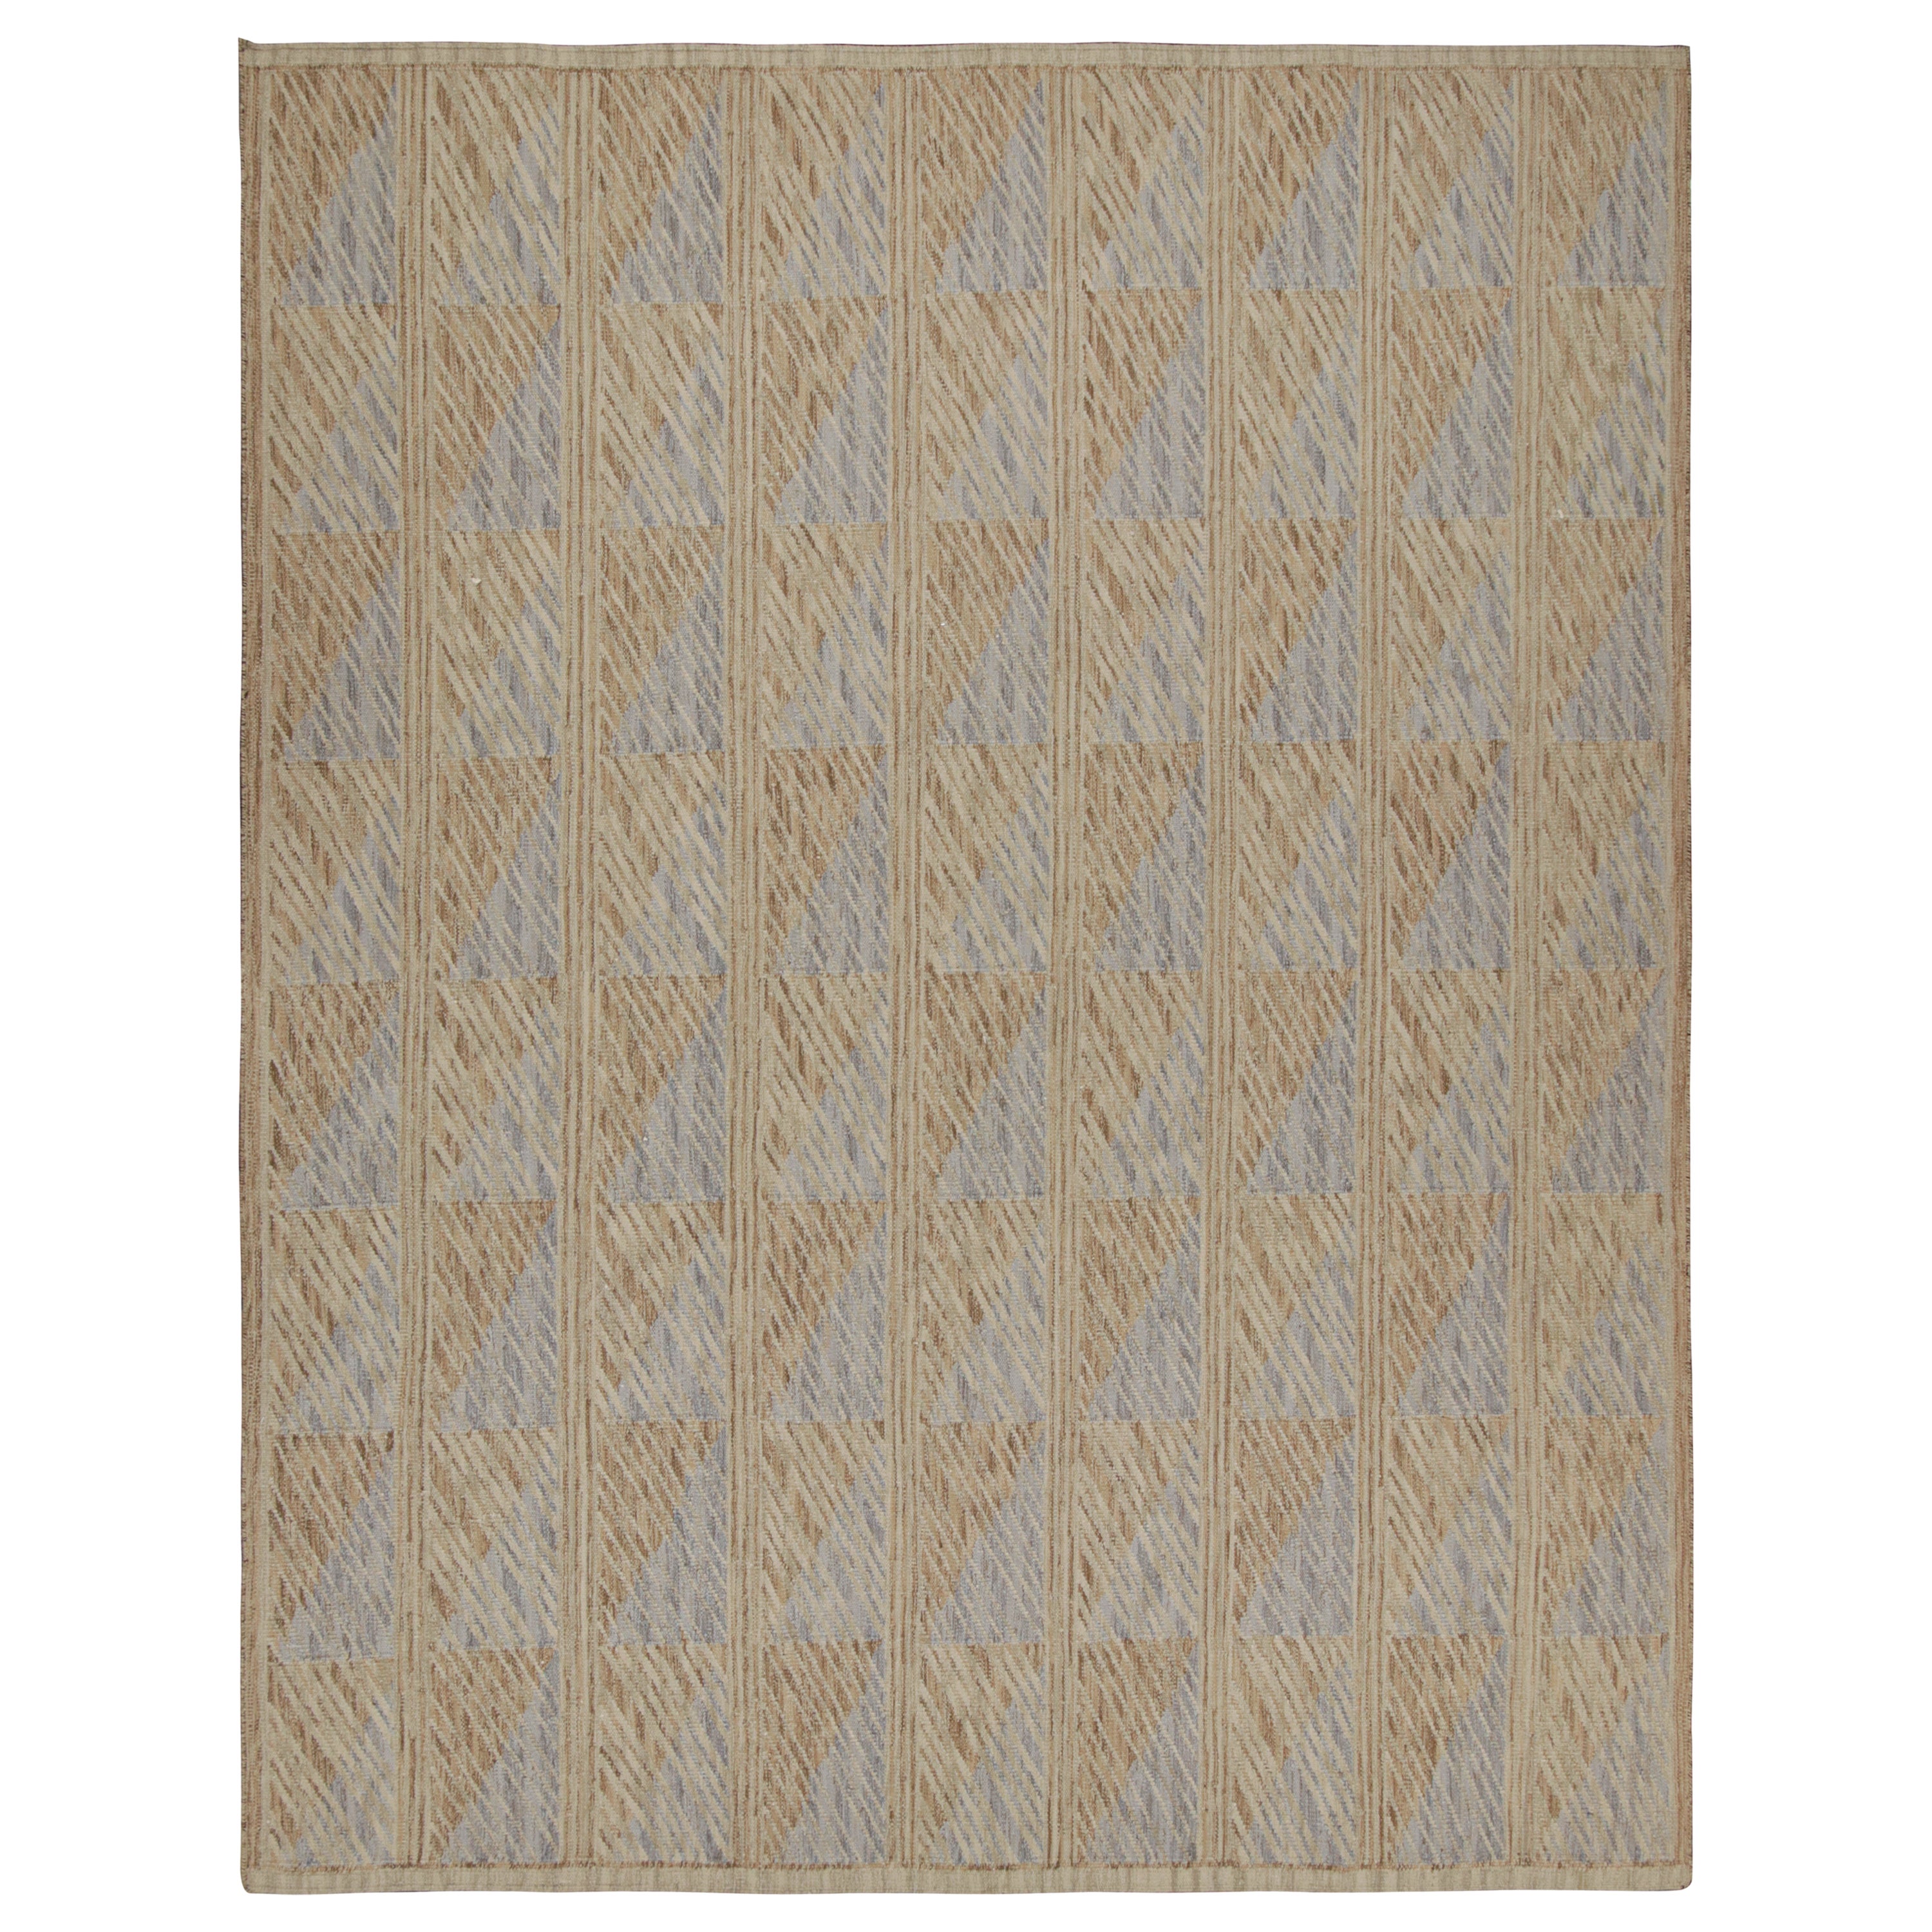 Rug & Kilim's übergroßer Teppich im skandinavischen Stil in Beige-Braun mit geometrischen Mustern